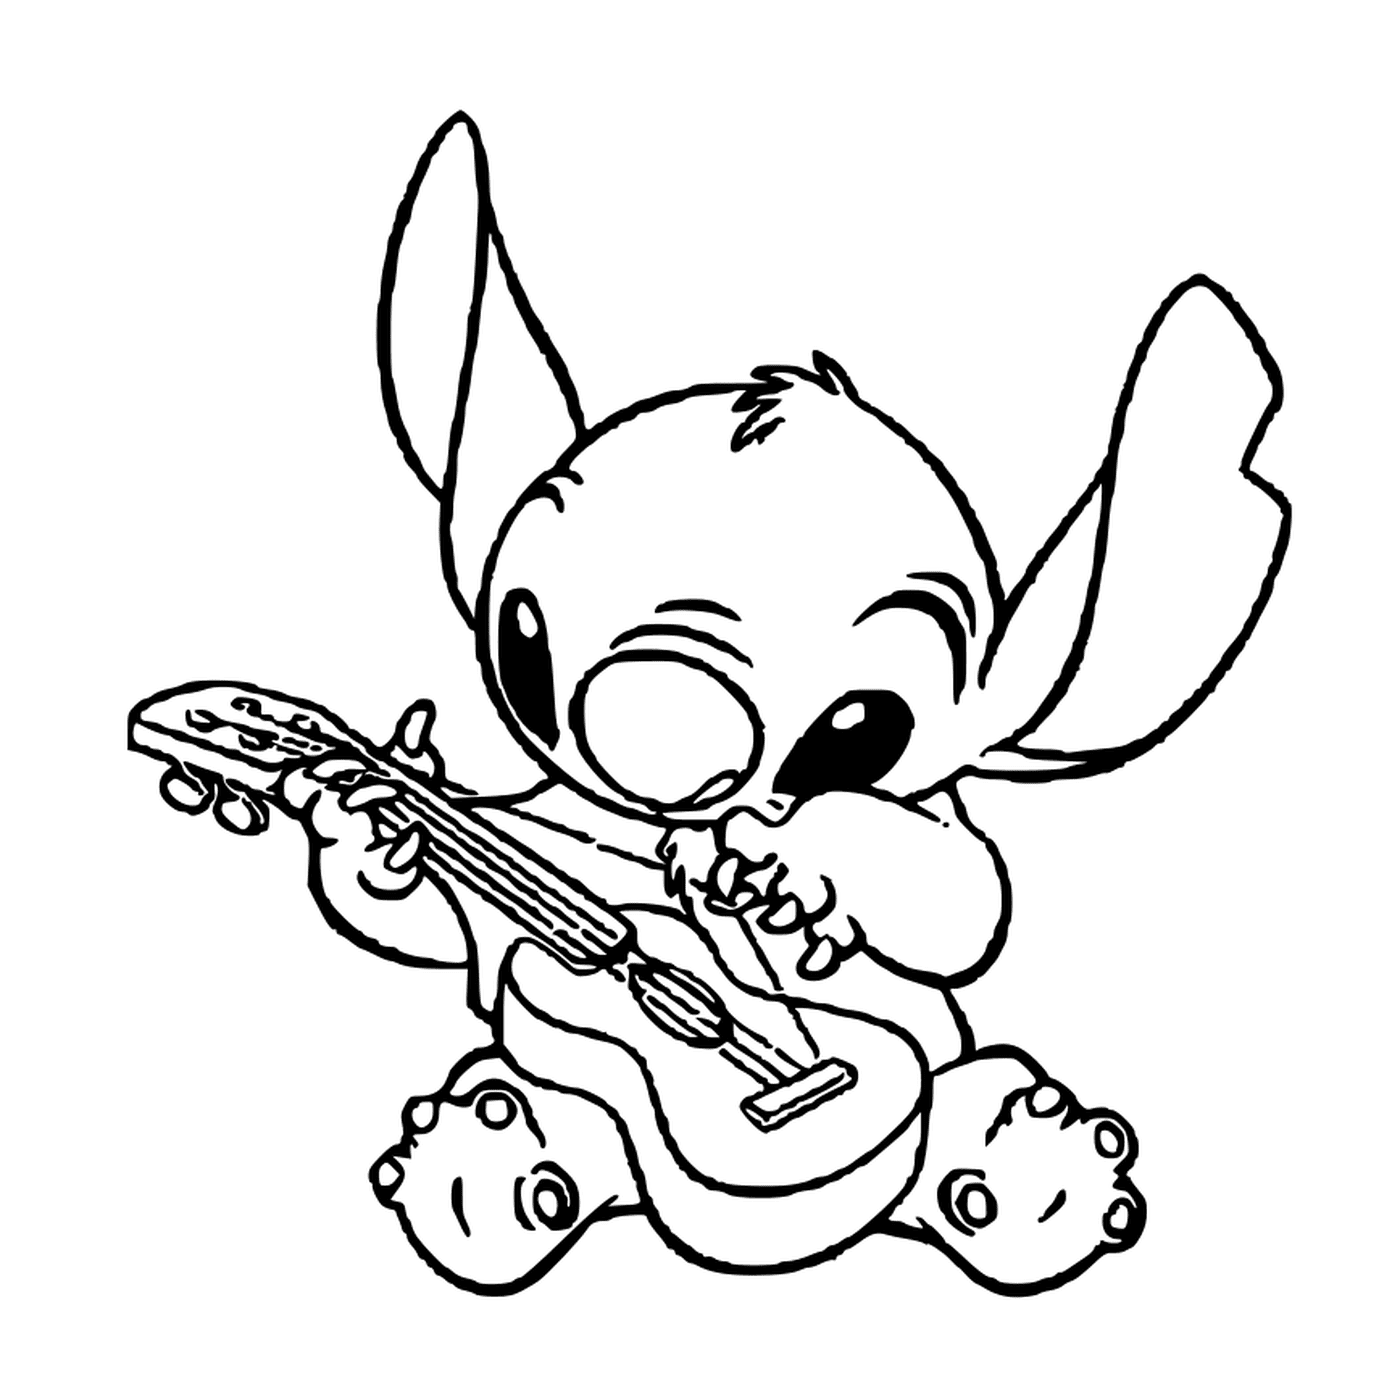   Stitch joue de la guitare 